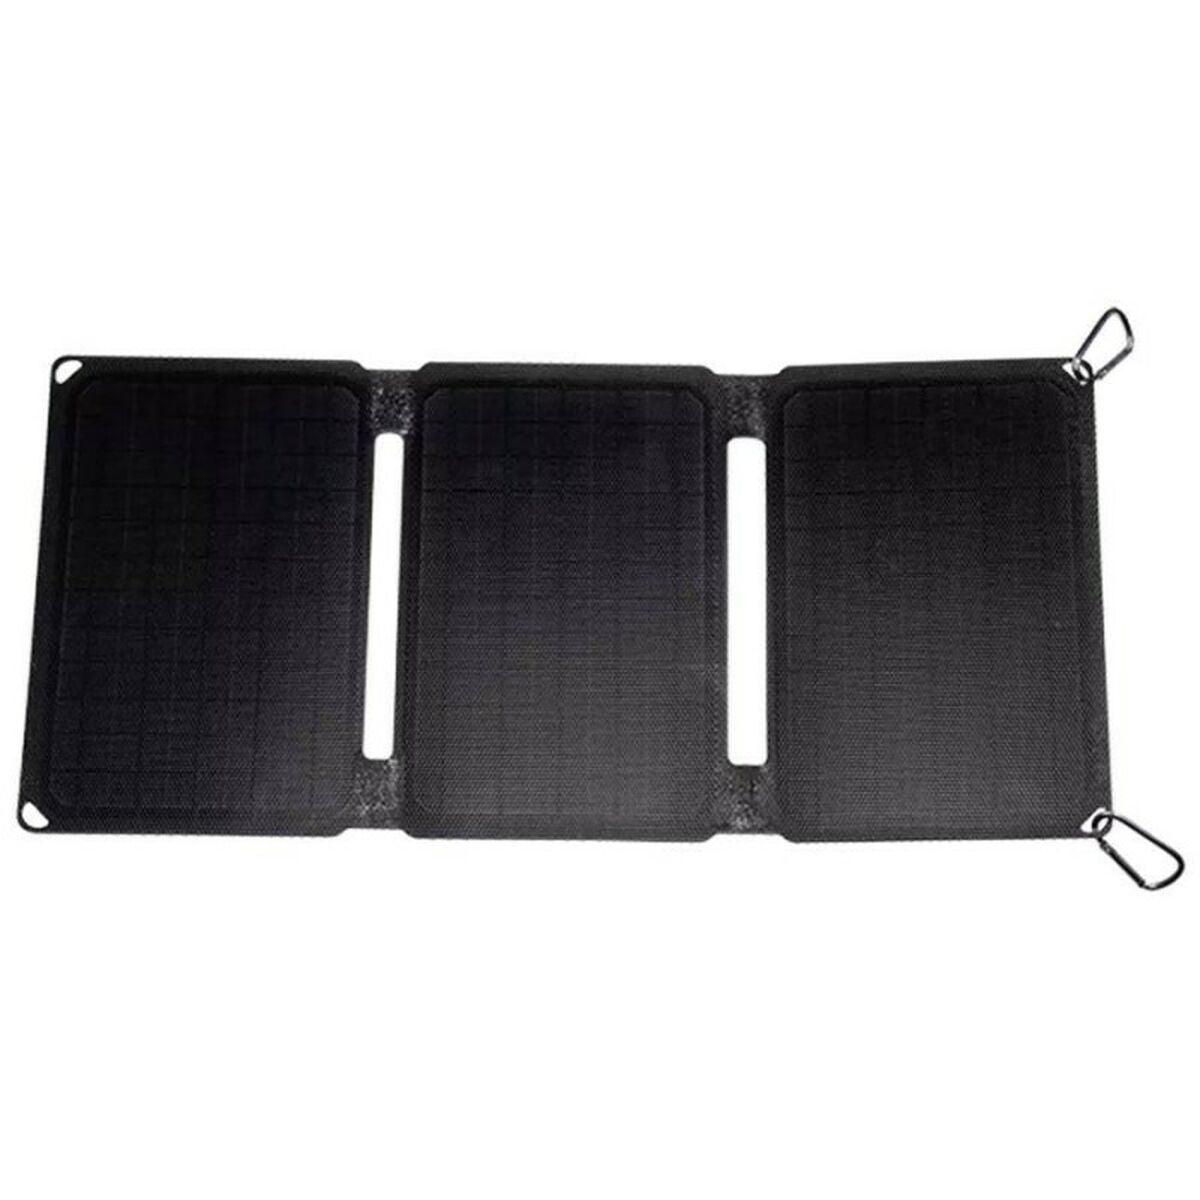 Solarkontakt Denver Electronics SOP-10200 Black 20 W